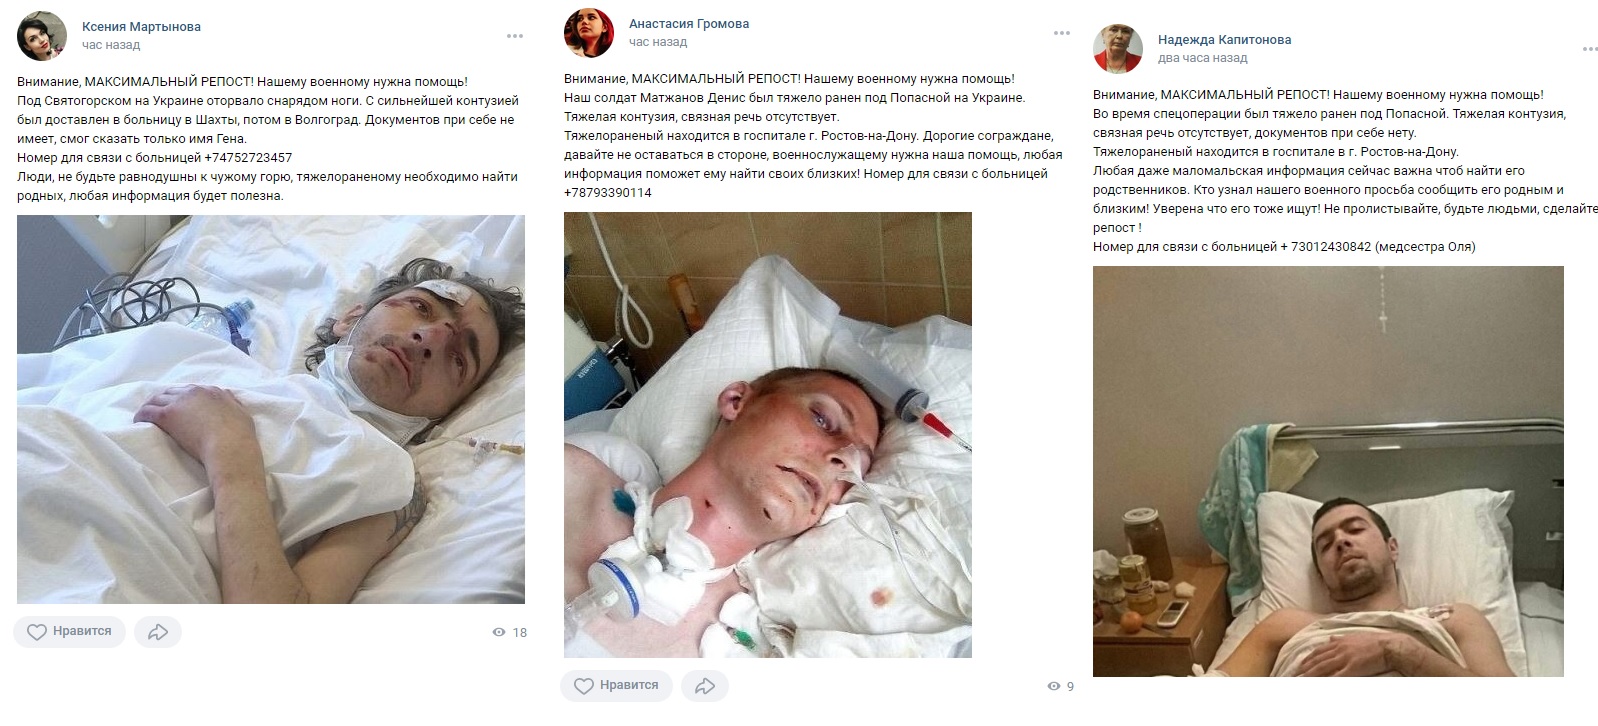 Раненому под Донецком военному нужна помощь в поиске родственников